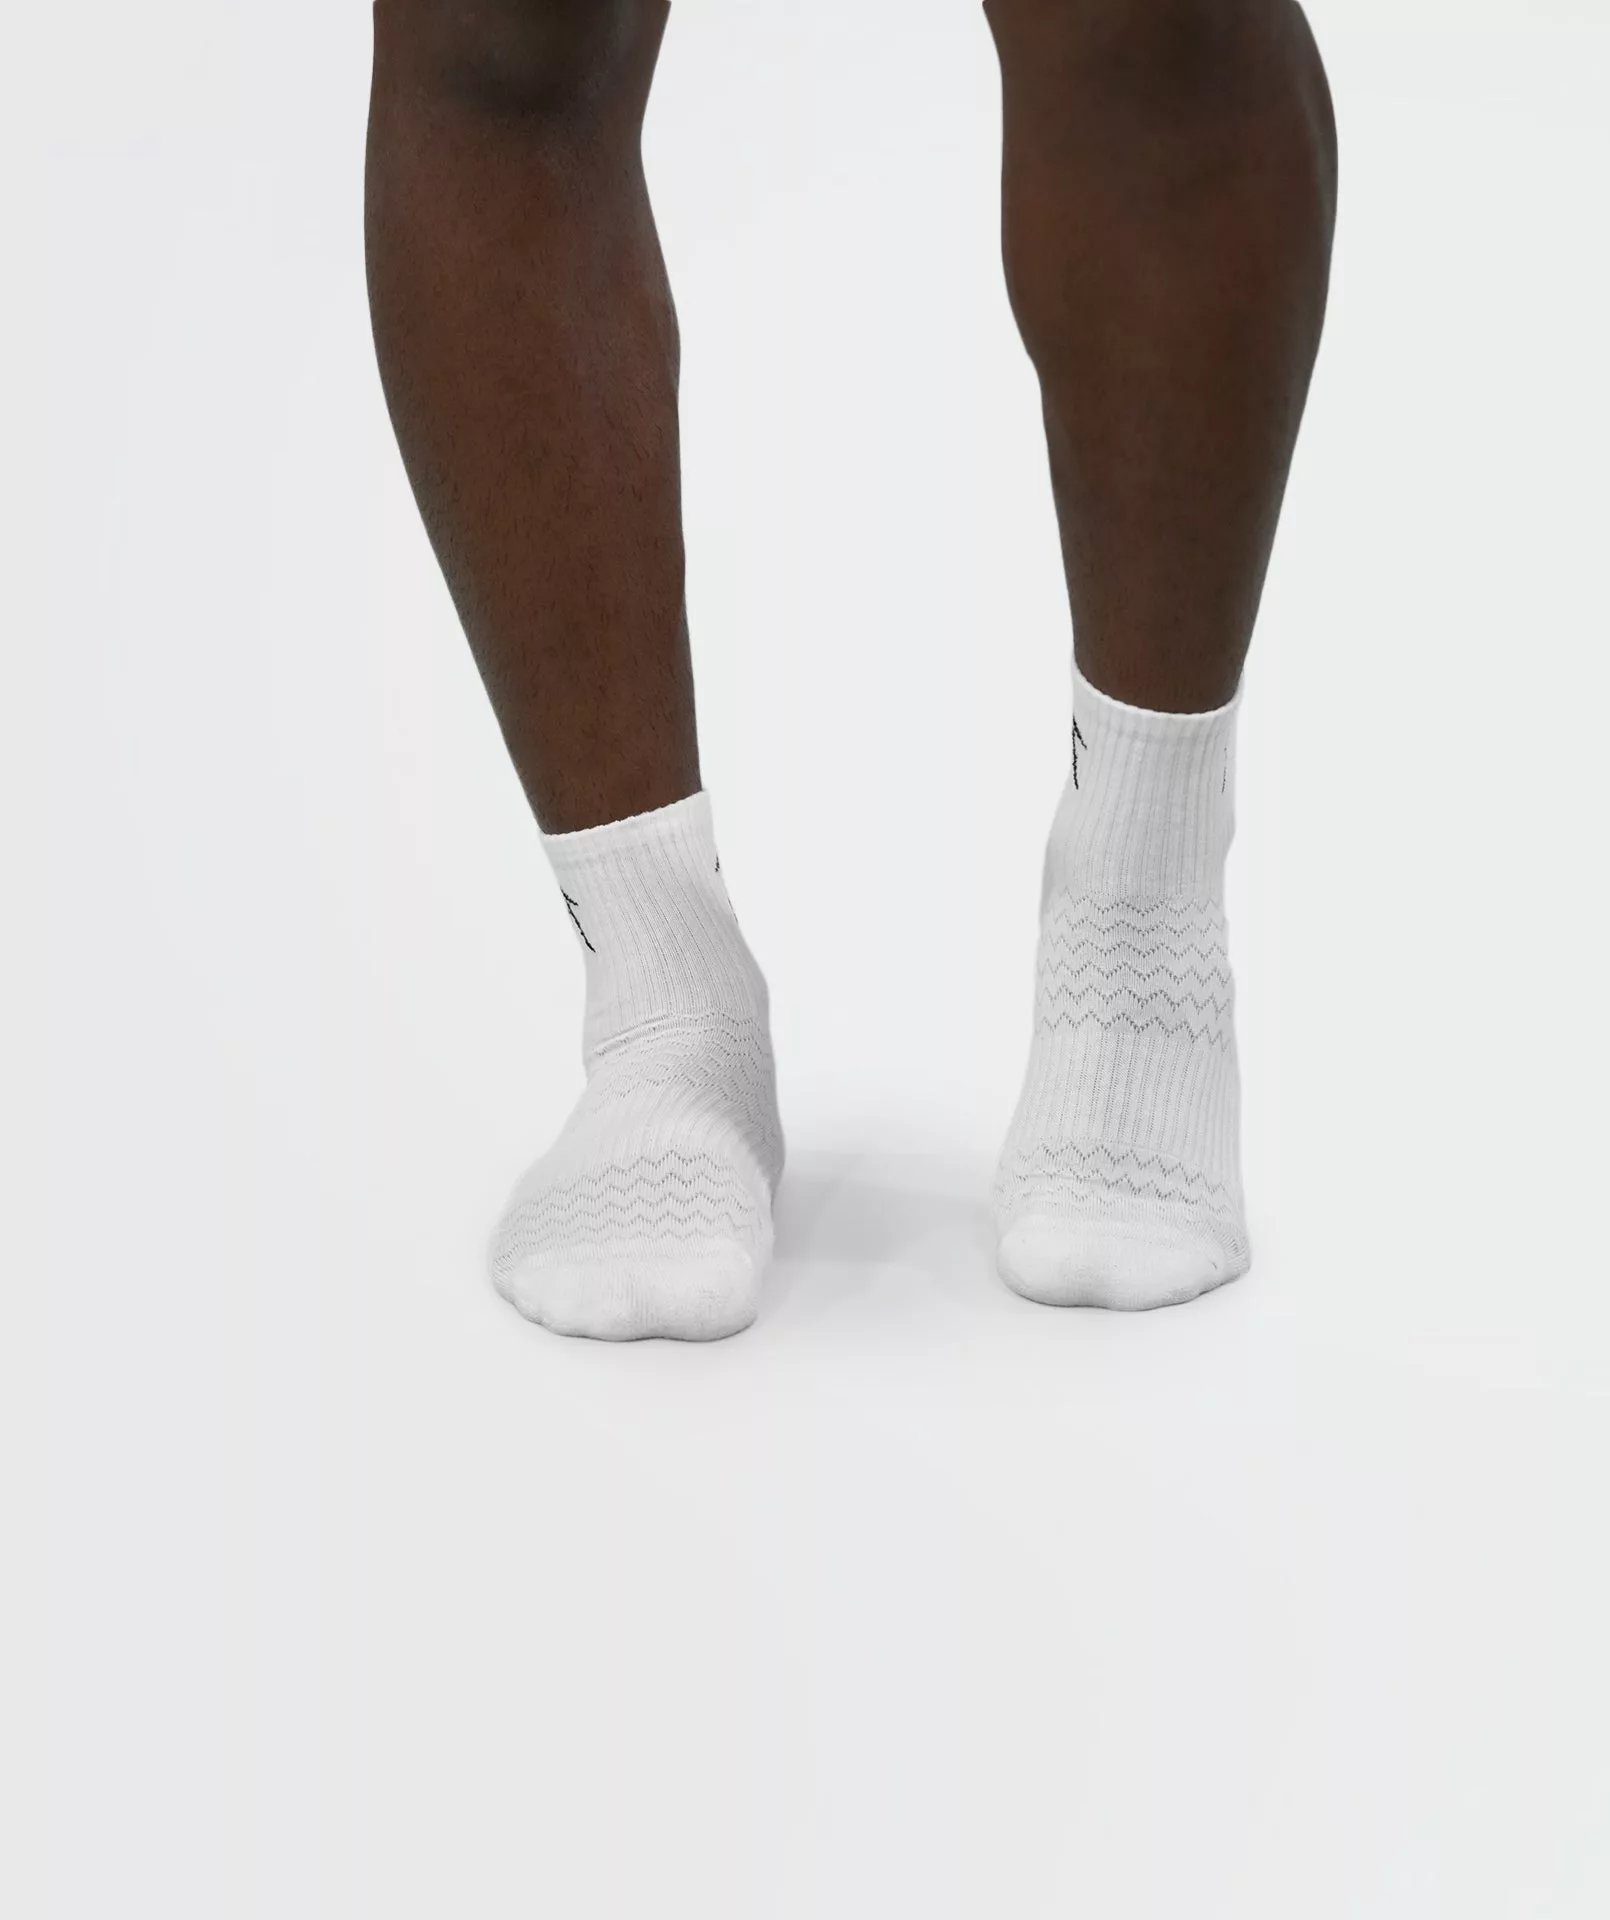 Unisex Short Crew Cotton Socks - Pack of 3 White Image 1